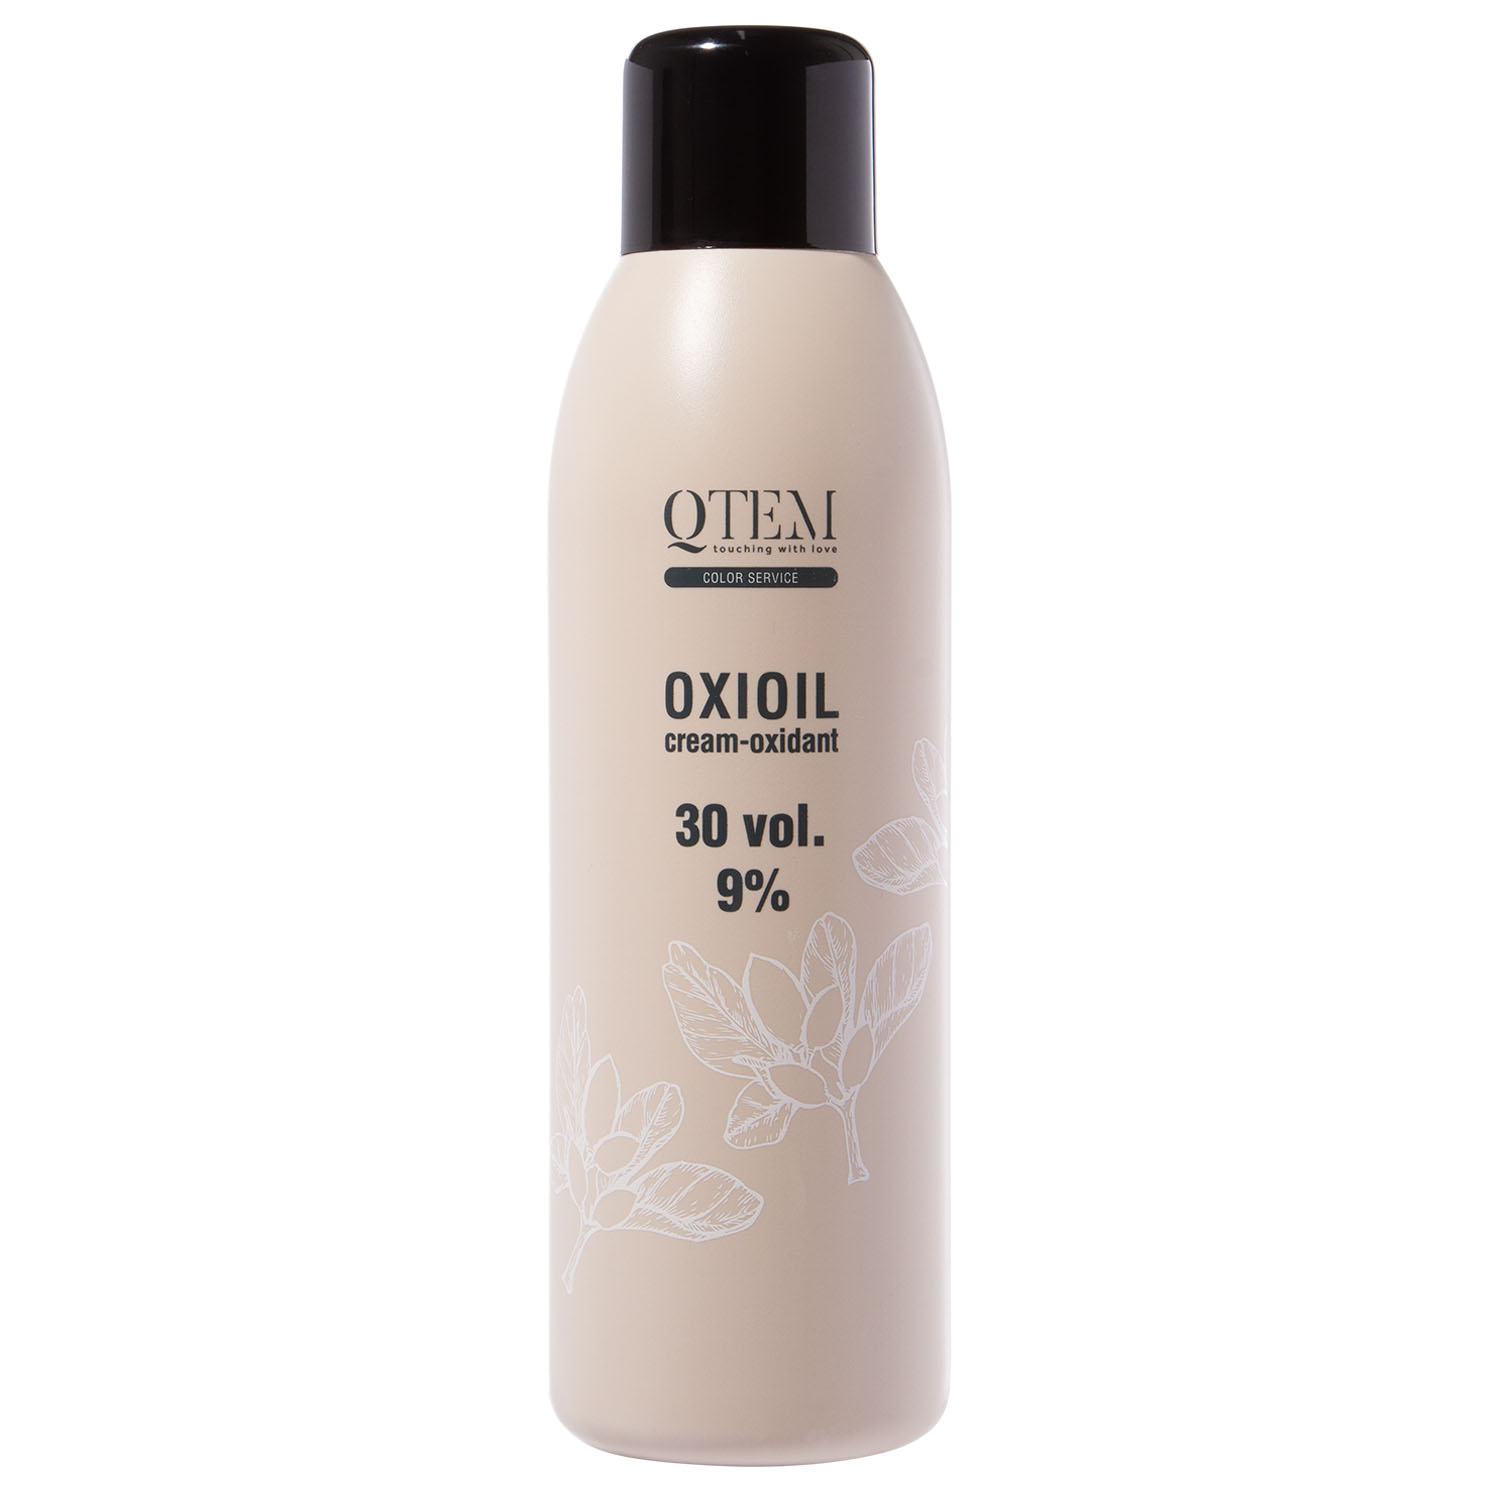 Qtem Универсальный крем-оксидант Oxioil 9% (30 Vol.), 1000 м